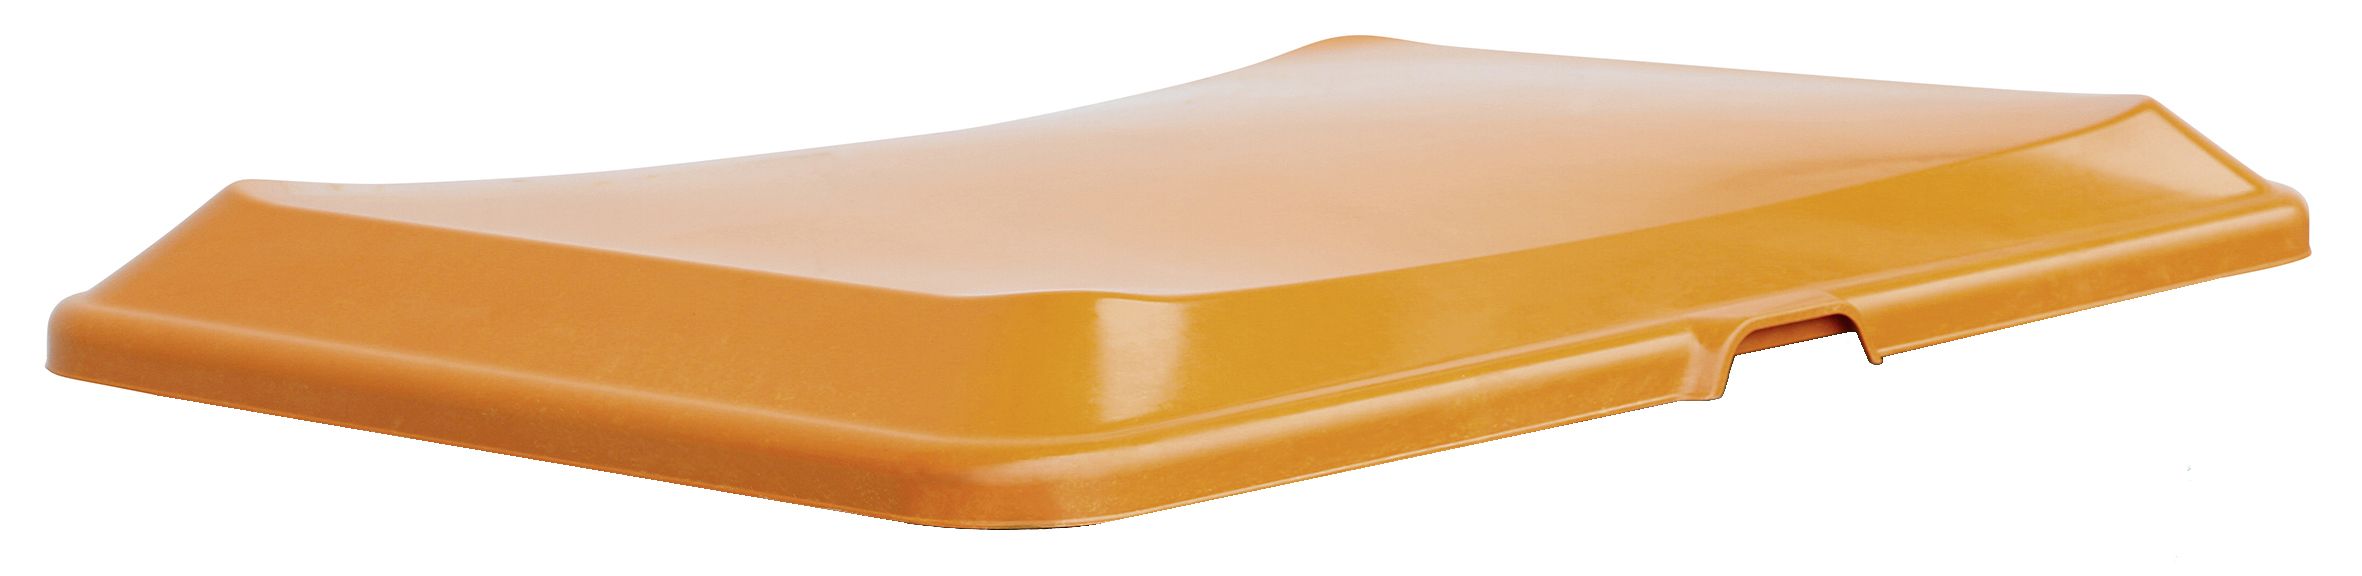 CEMO Zubehör für Rechteckbehälter unterfahrbar – Stapeldeckel orange